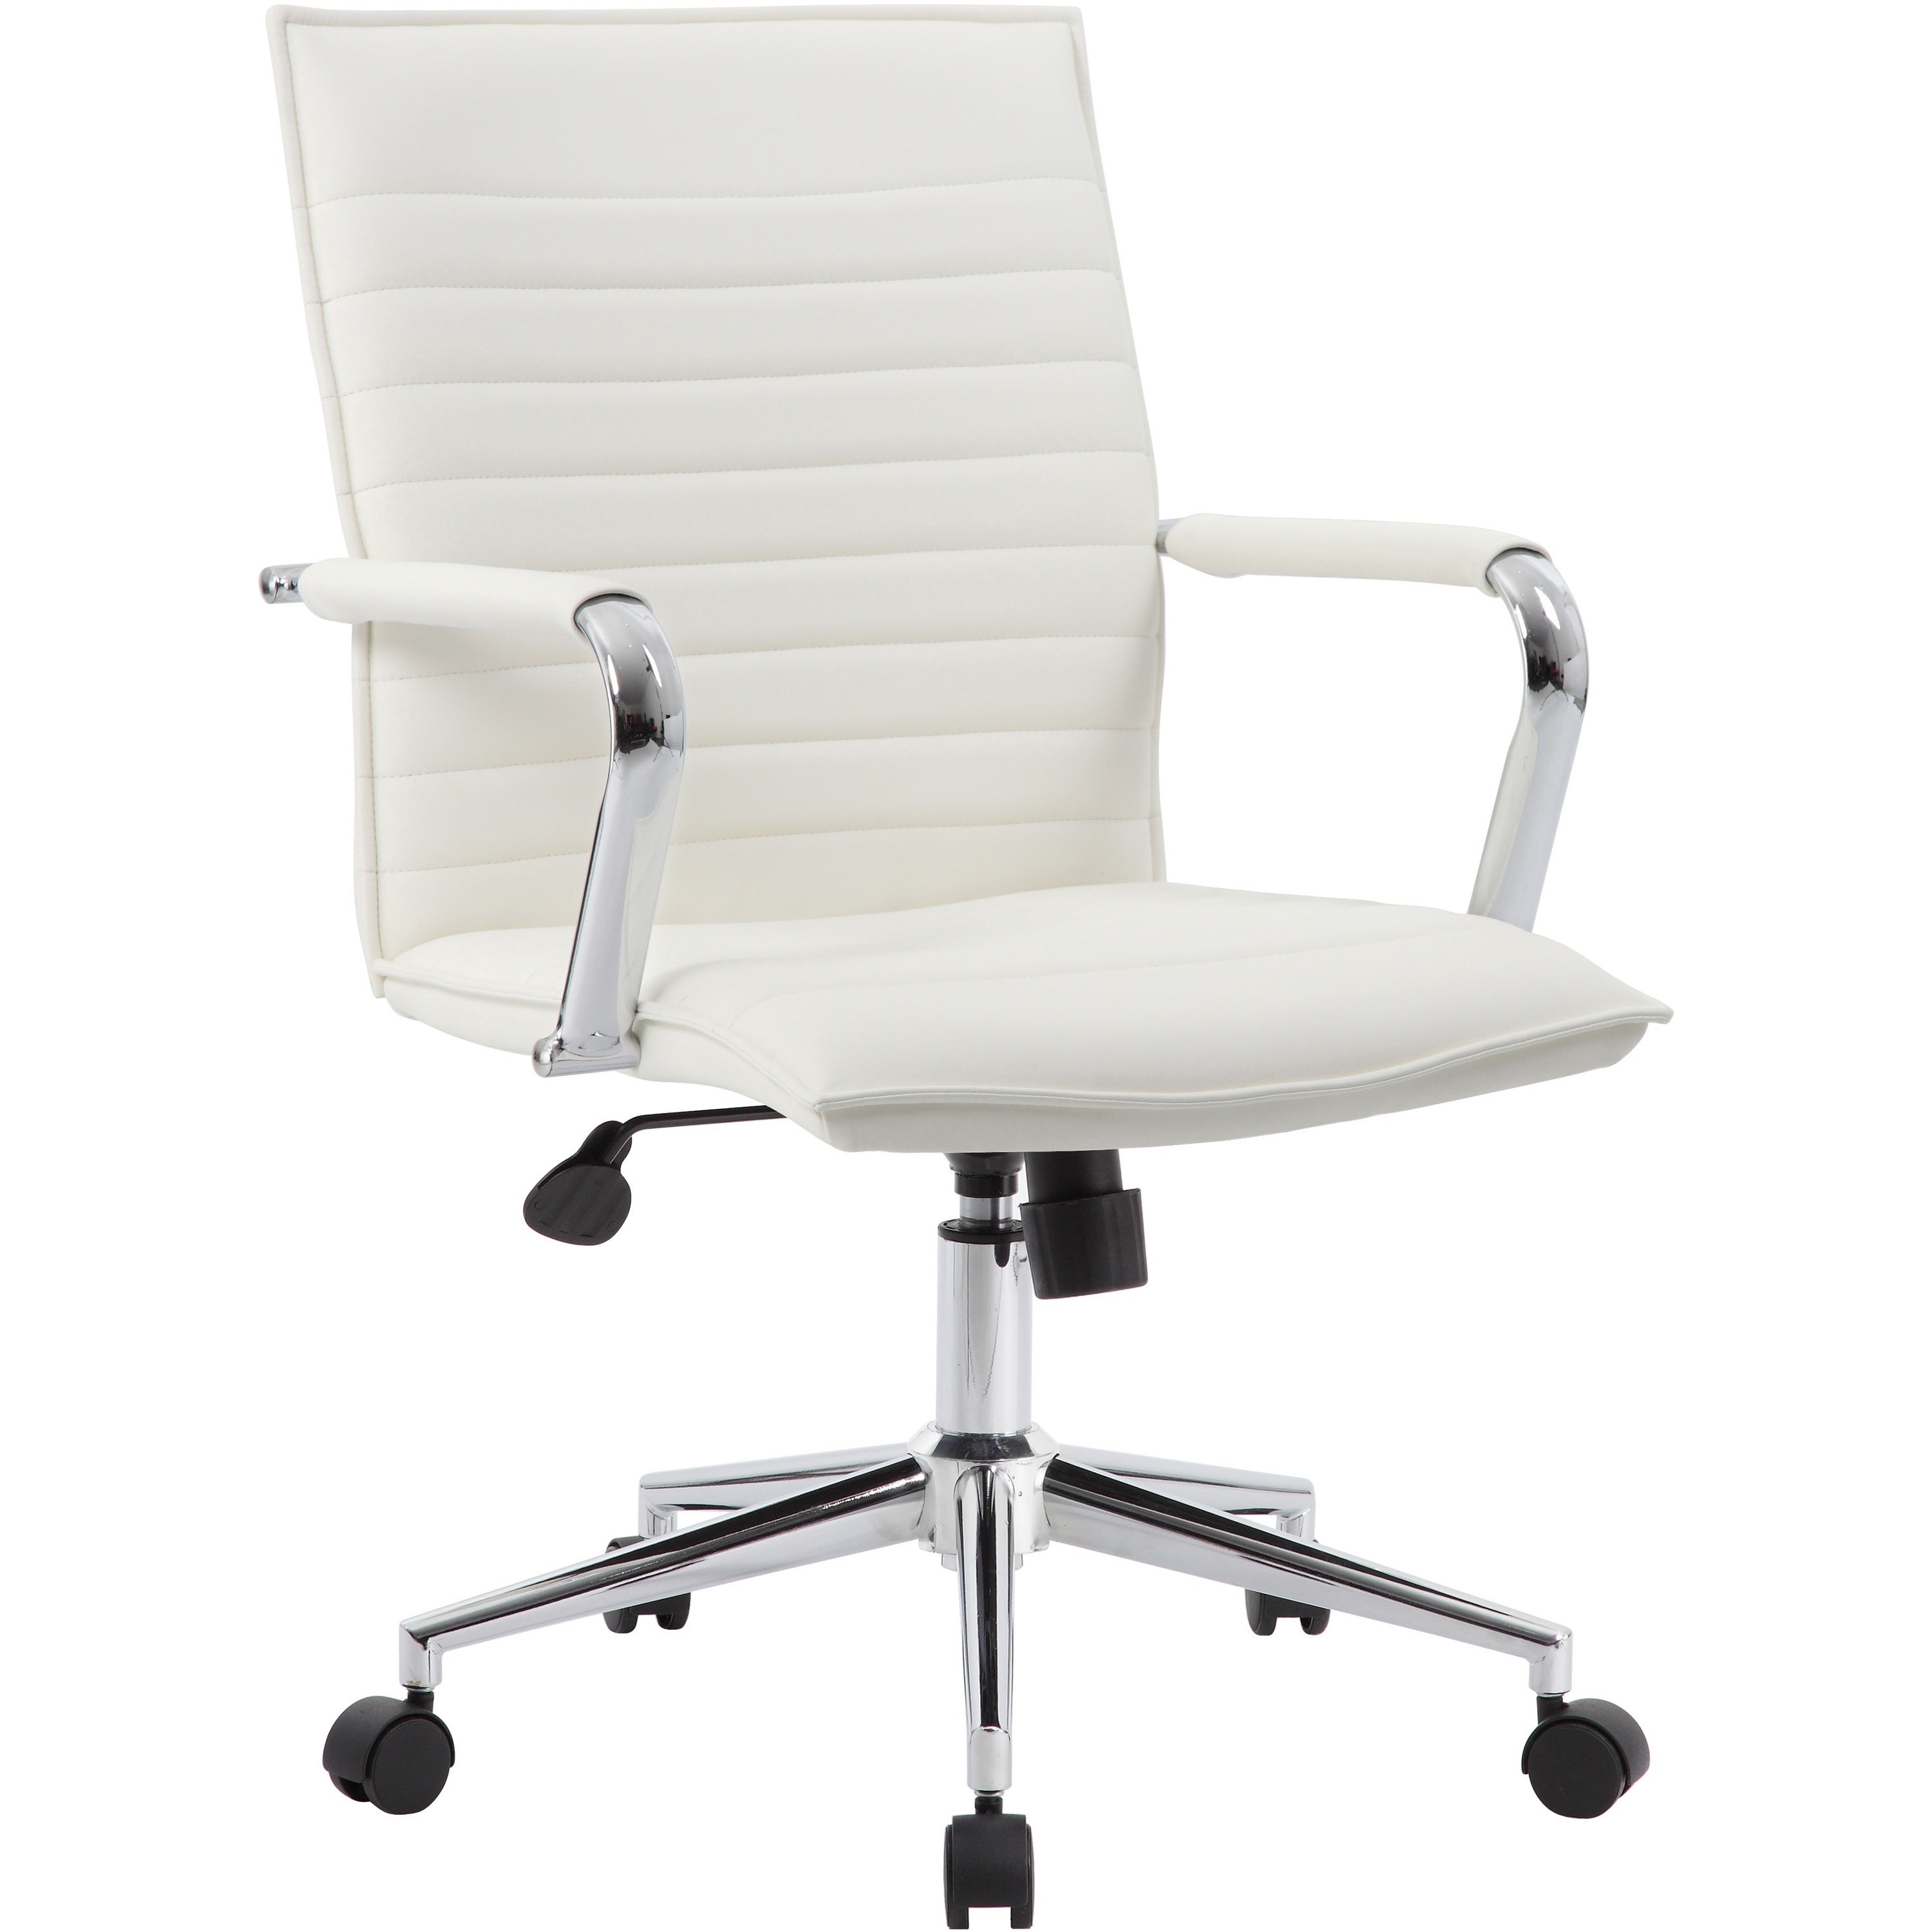 Boss Hospitality Task Chair w/ Arms - White Vinyl Seat - White Vinyl Back - 5-star Base - Armrest - 1 / Carton - 1